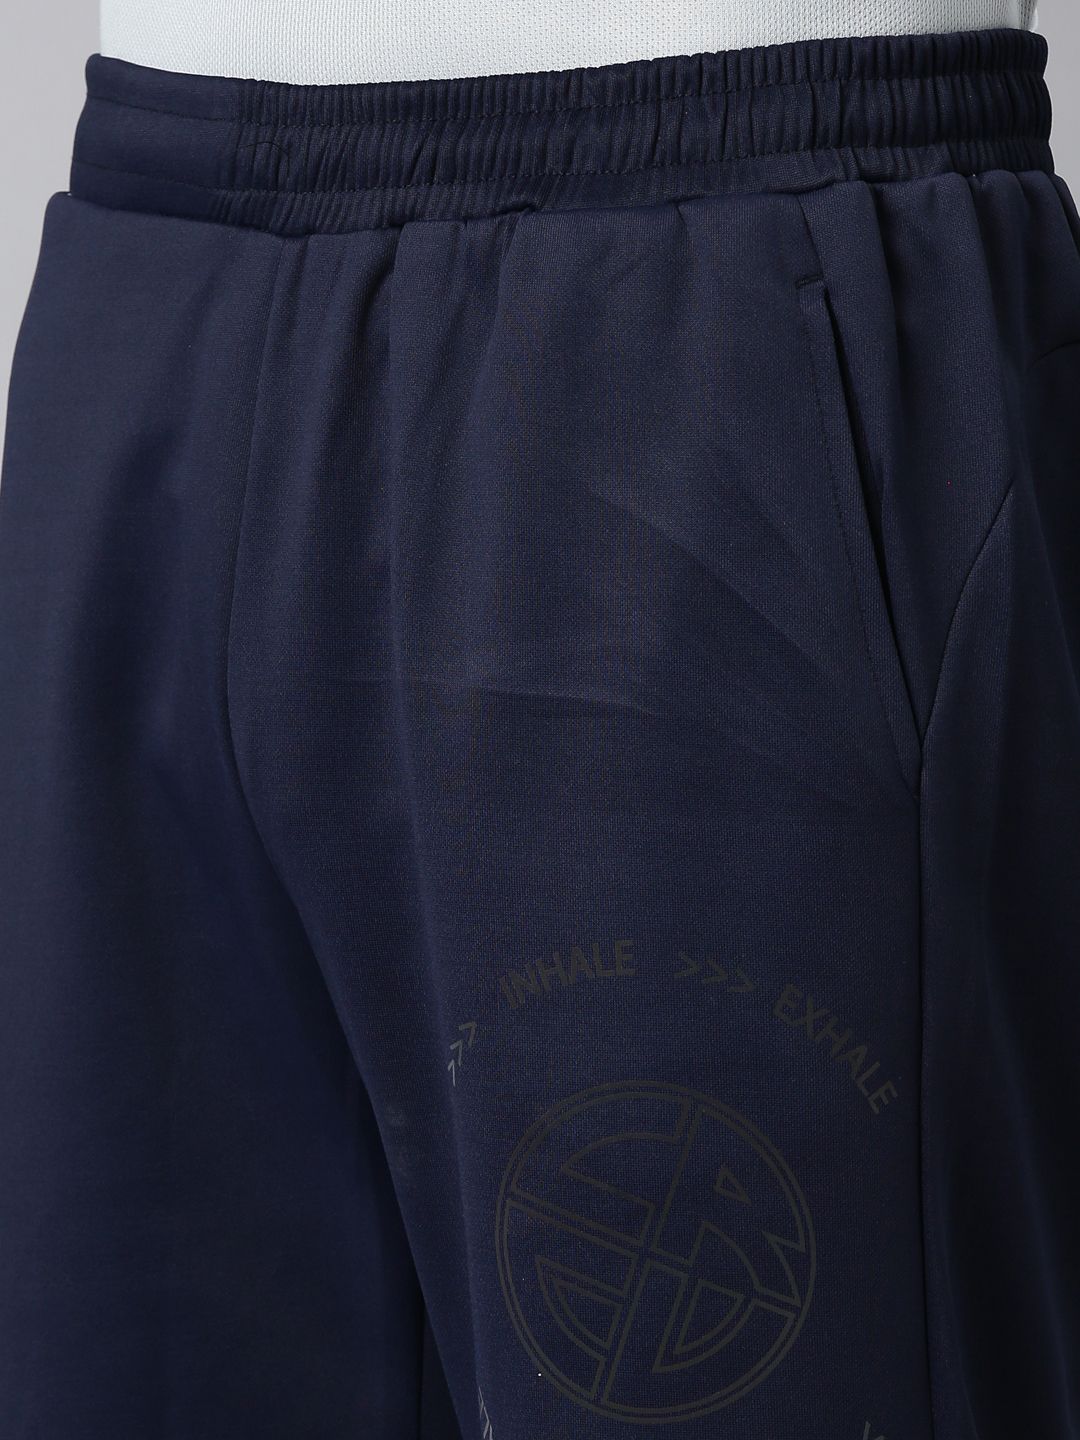 Fabstieve Men's NS Lycra Shorts (VK-311)